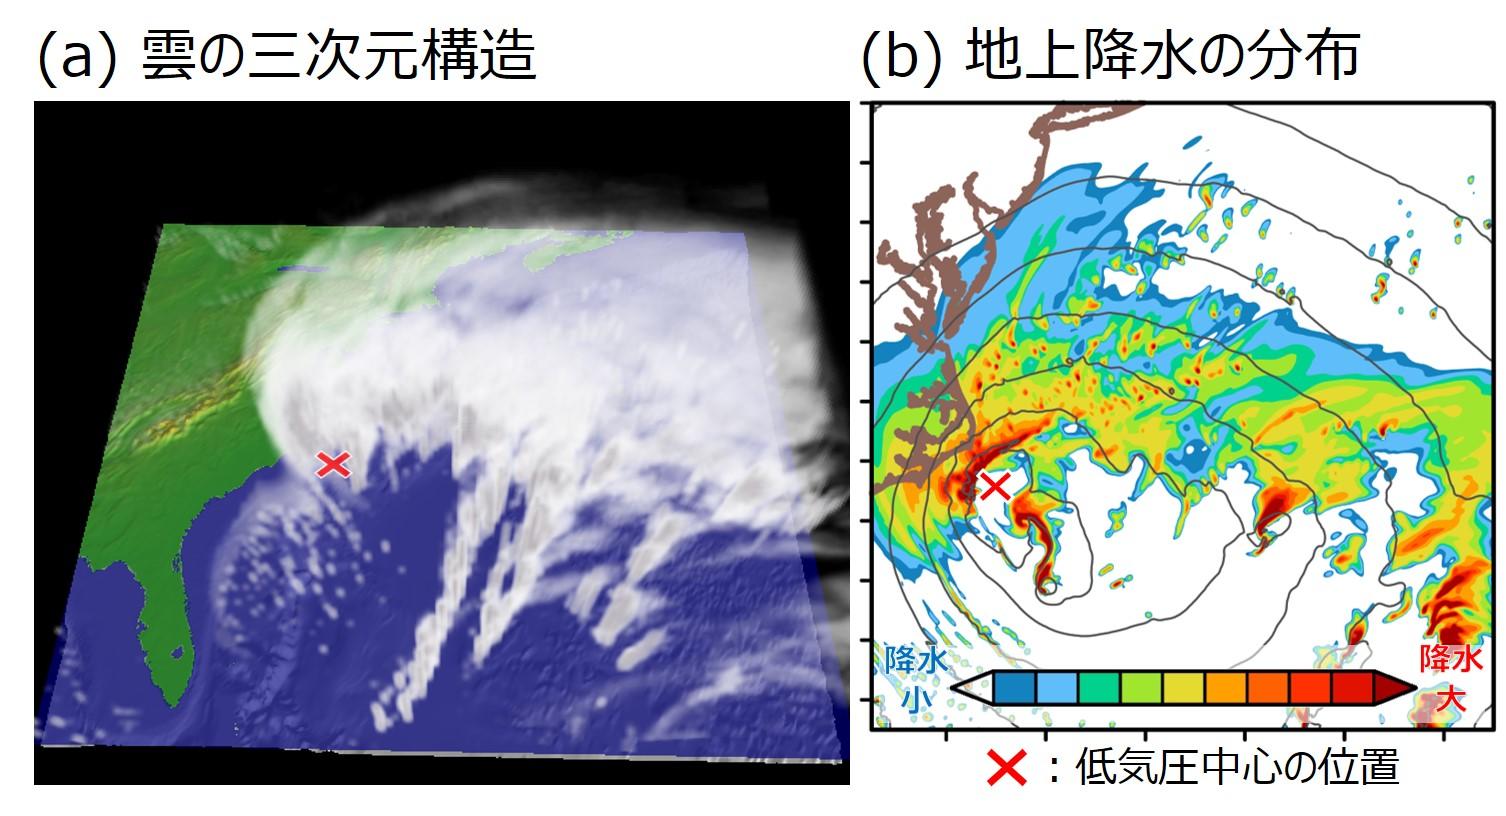 立正大、九州大、海洋研究開発機構、名古屋大で共同研究世界で初めて『スーパー爆弾低気圧』の発達要因を解明 -- 天気予報の改善や温暖化に伴う爆弾低気圧の変化の理解向上に --